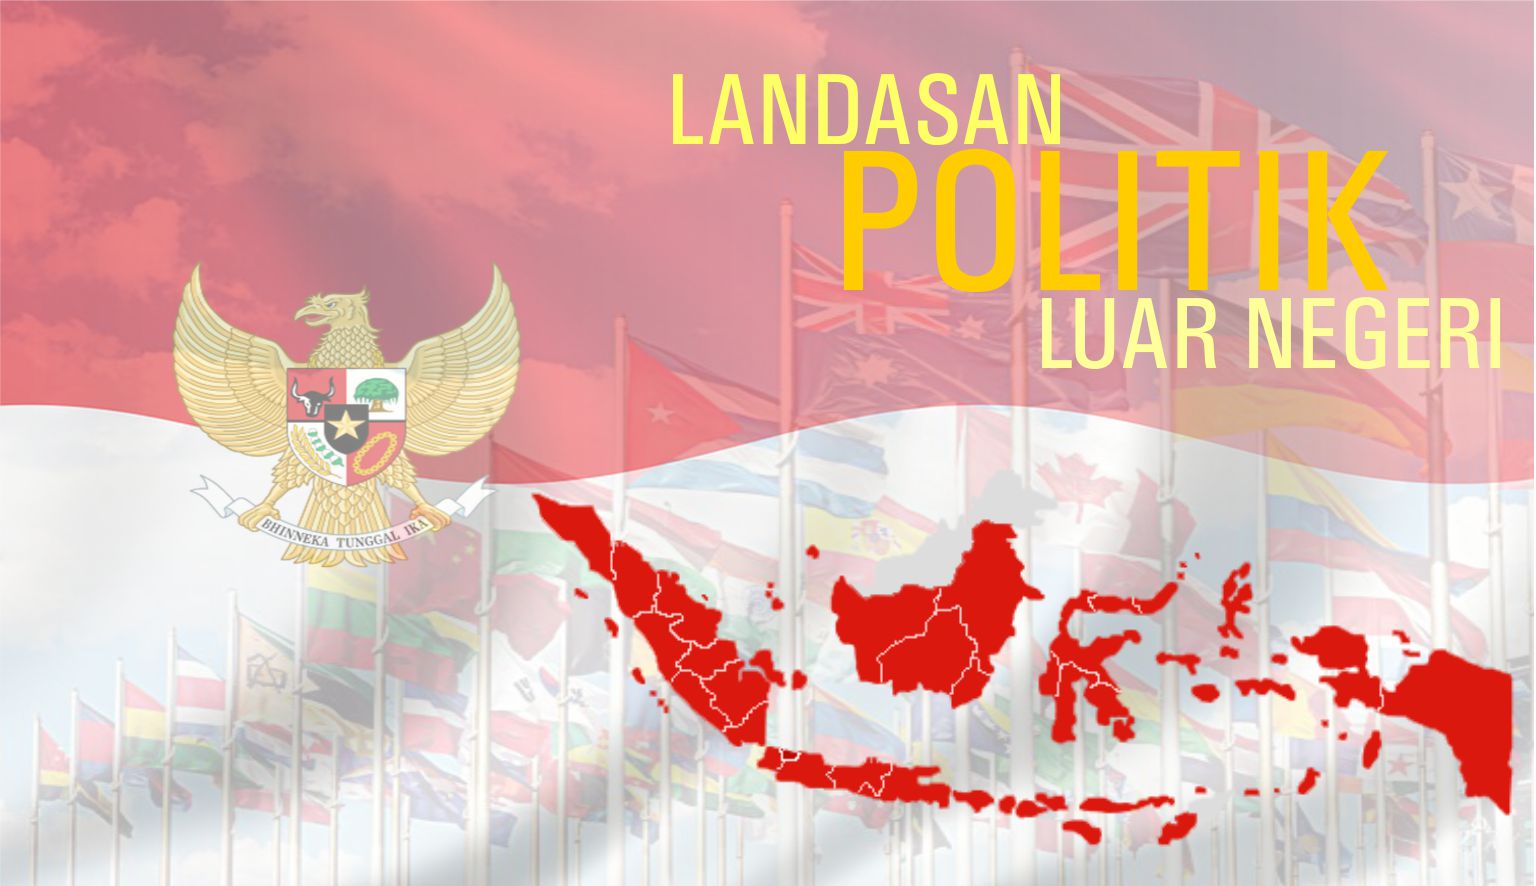 Landasan ideologi politik luar negeri indonesia, yaitu